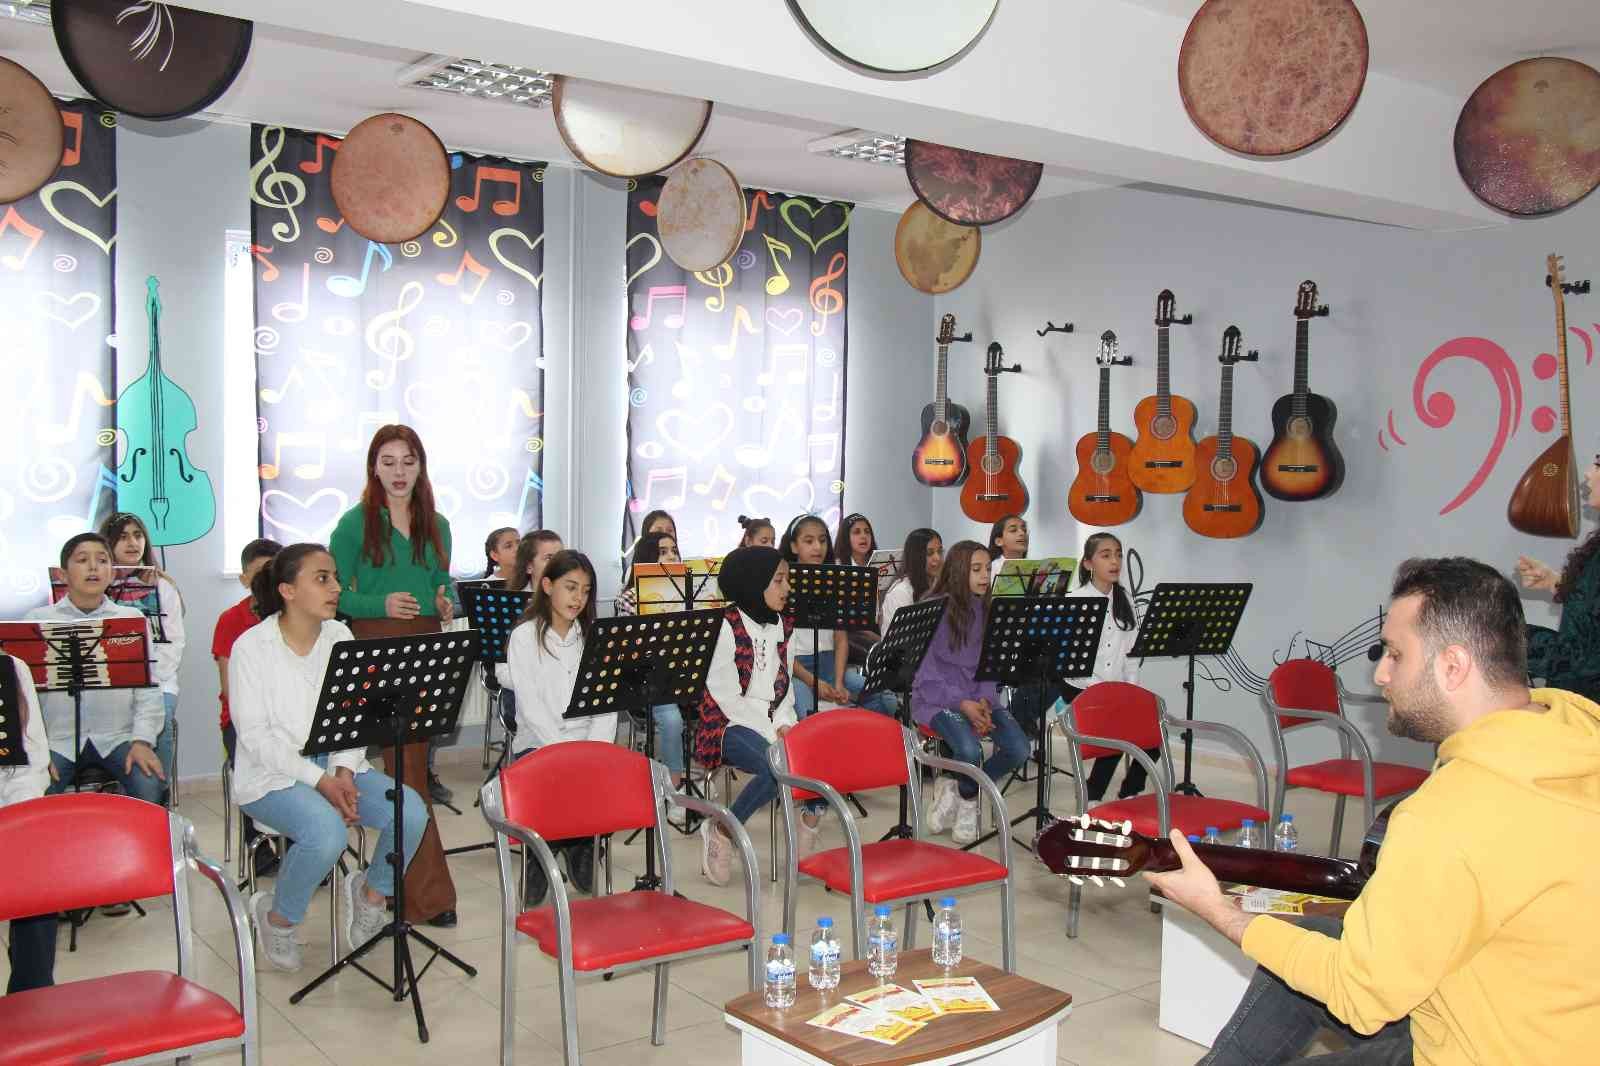 Ünlü şarkıcı kızının doğum günü anısına Mardin’deki bir okula müzik atölyesi yaptırdı #mardin